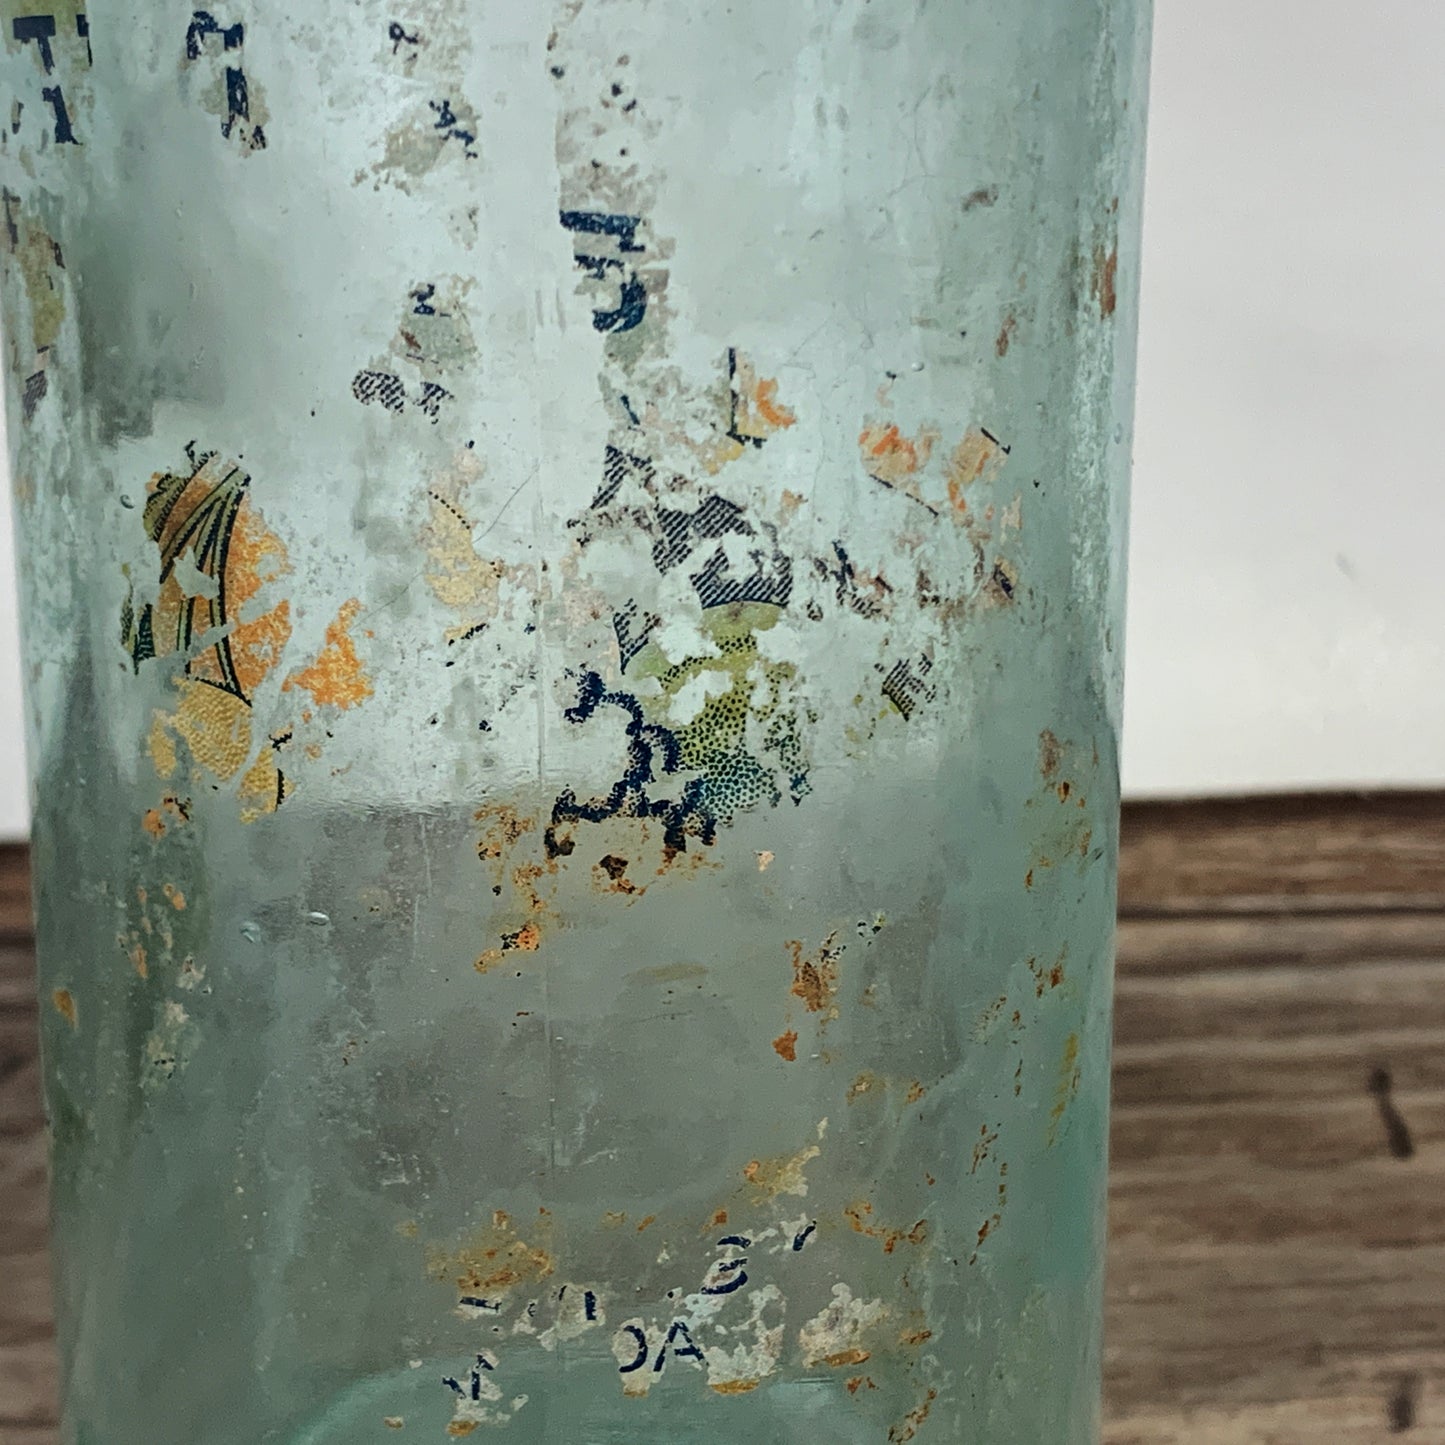 Antique Aqua Blue Glass Bottle, Farm House Decoration